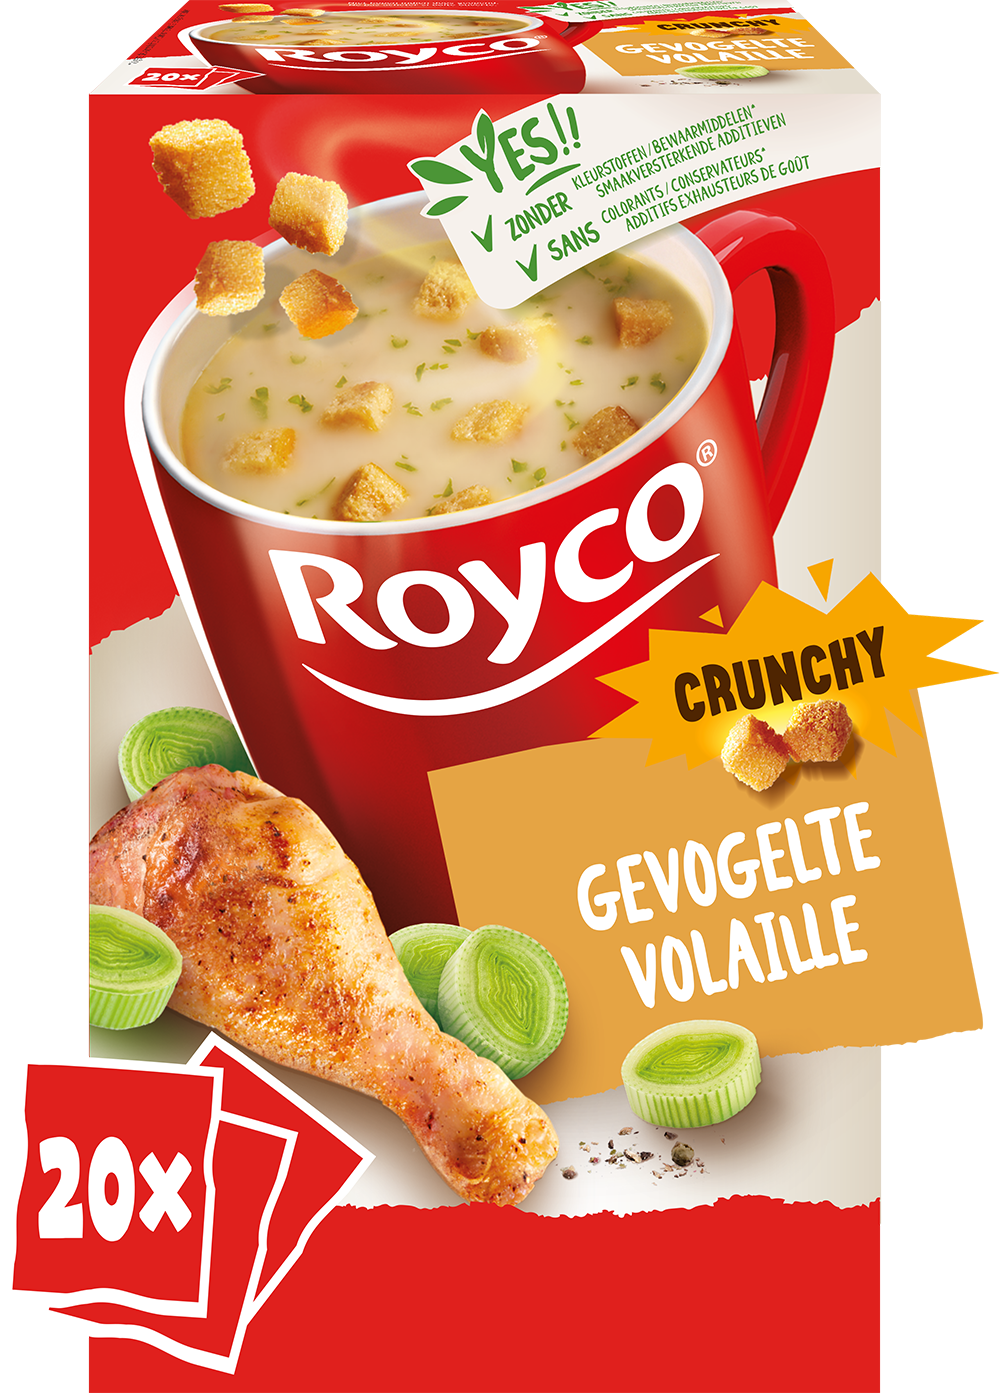 Royco Crunchy Volaille